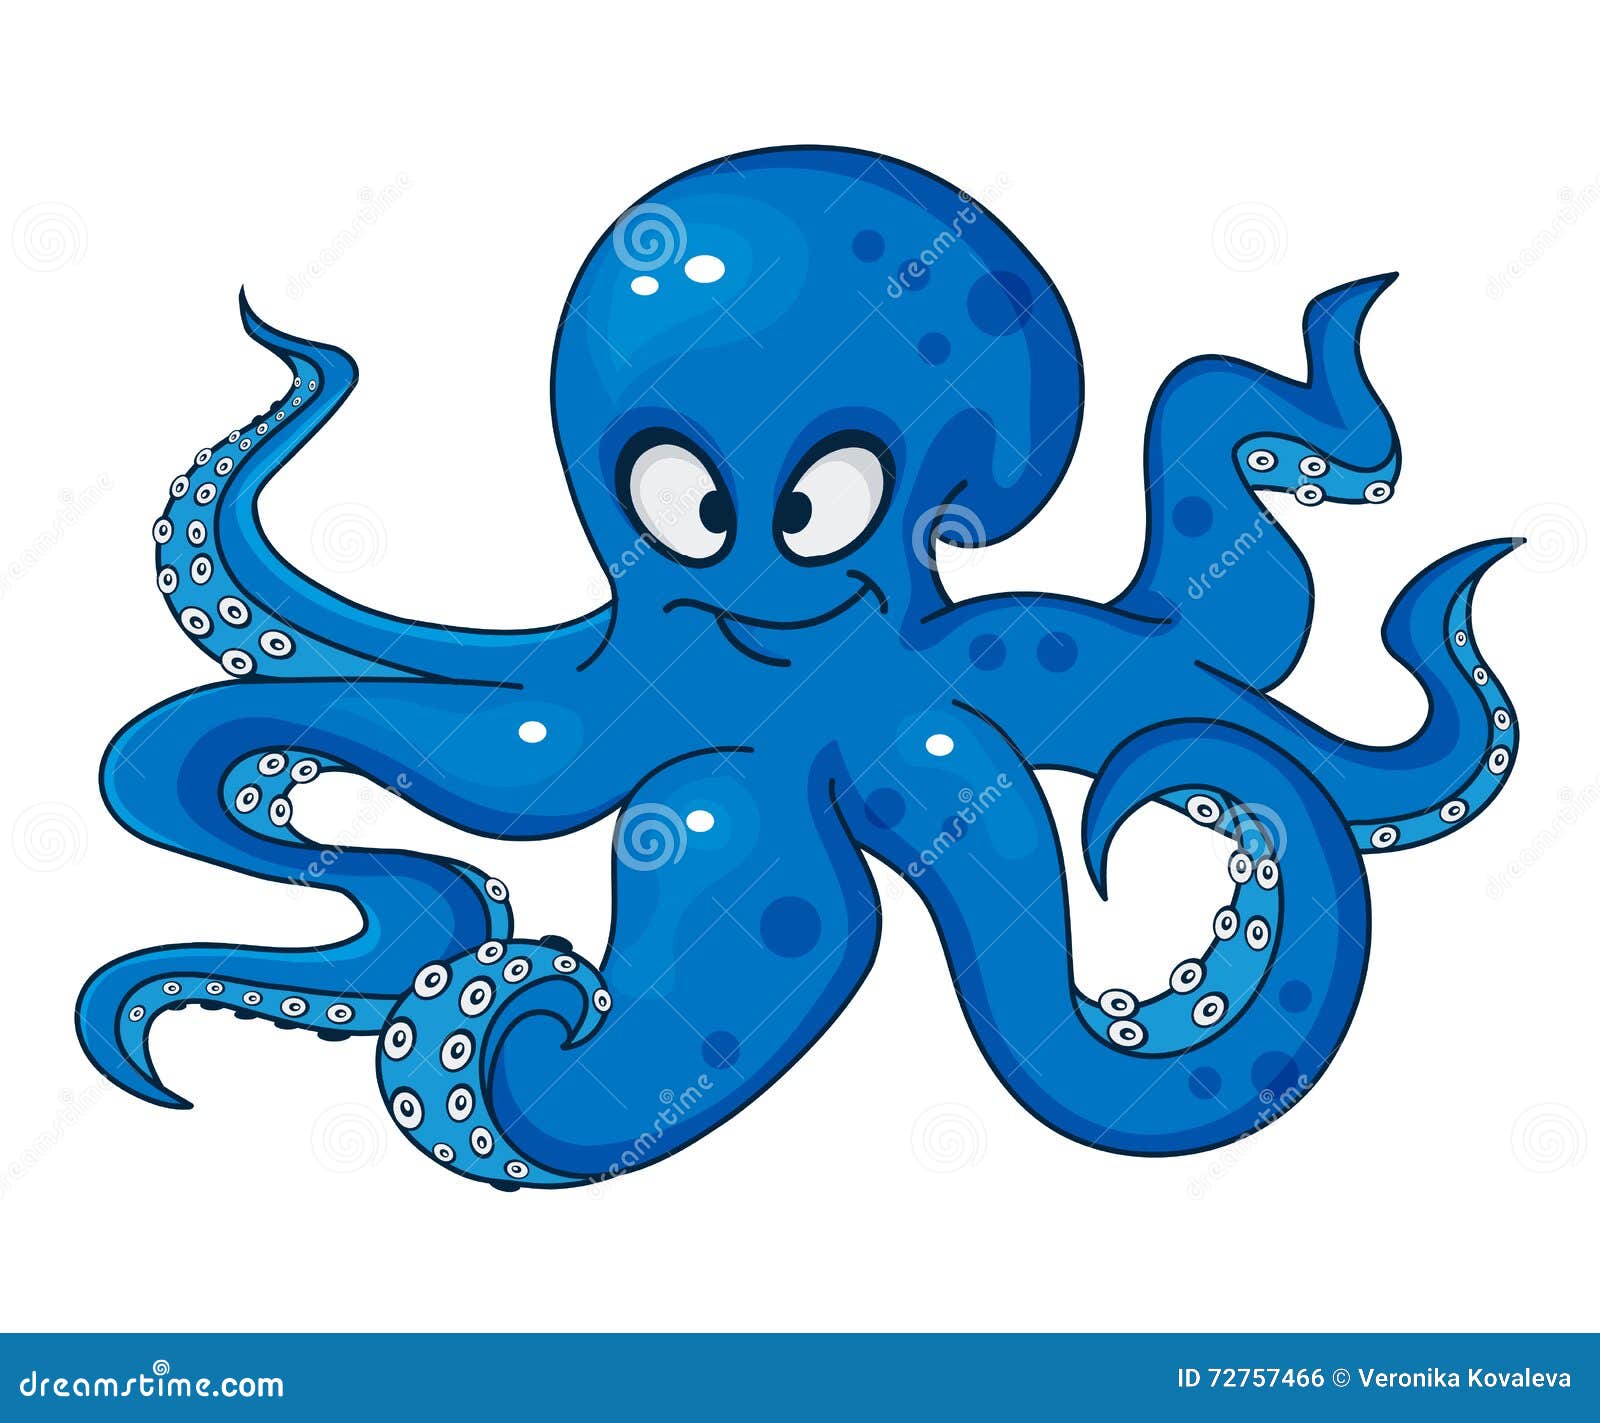 Blue cartoon octopus stock vector. Illustration of octopus - 72757466